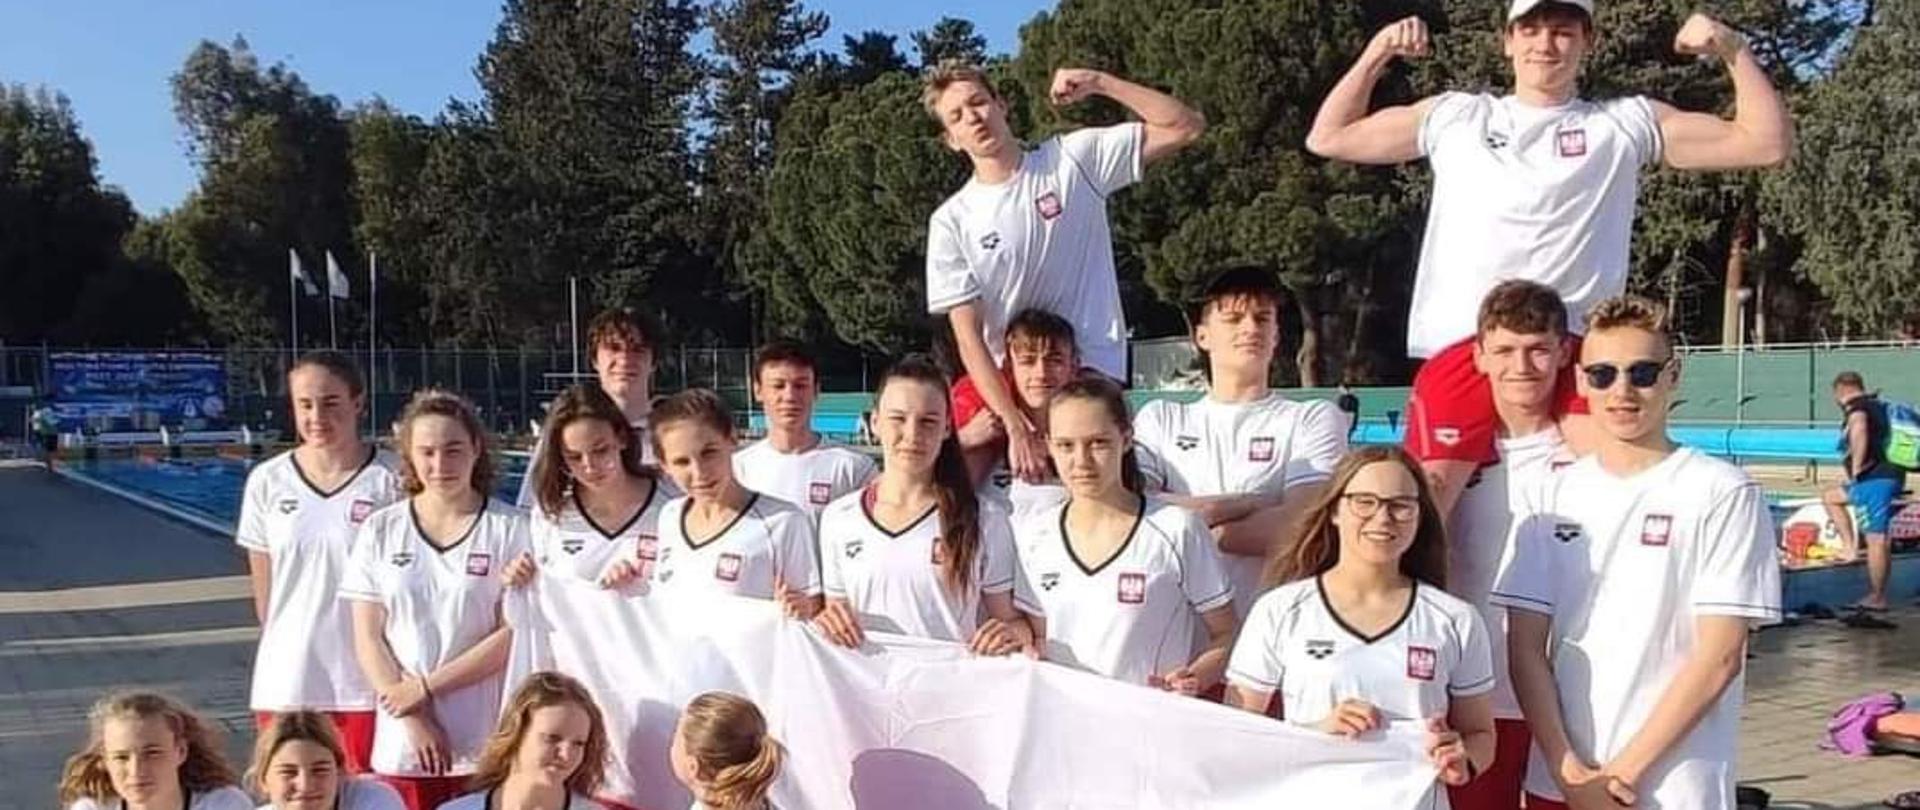 Zdjęcie przedstawia 19-osobową reprezentację Polski juniorów, stojącą na dworze przed odkrytą pływalnią. Zawodnicy pozują do zdjęcia ubrani w stroje sportowe w barwach biało - czerwonych. Pięciu pływaków trzyma w rękach rozłożoną flagę Polski